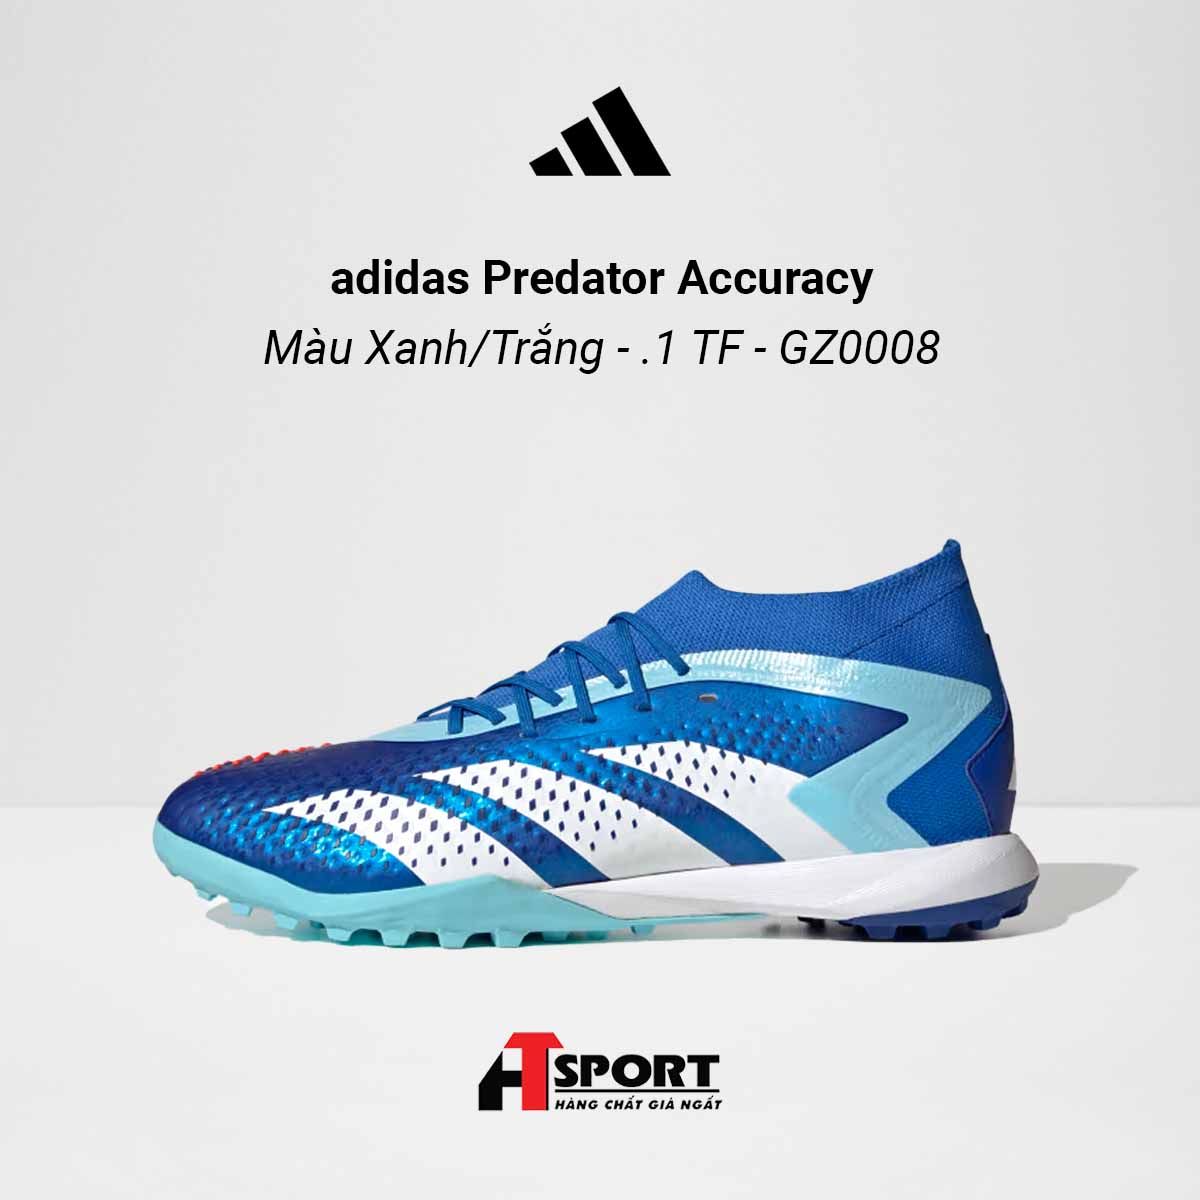  adidas Predator Accuracy Màu Xanh Biển/Trắng .1 TF - GZ0008 